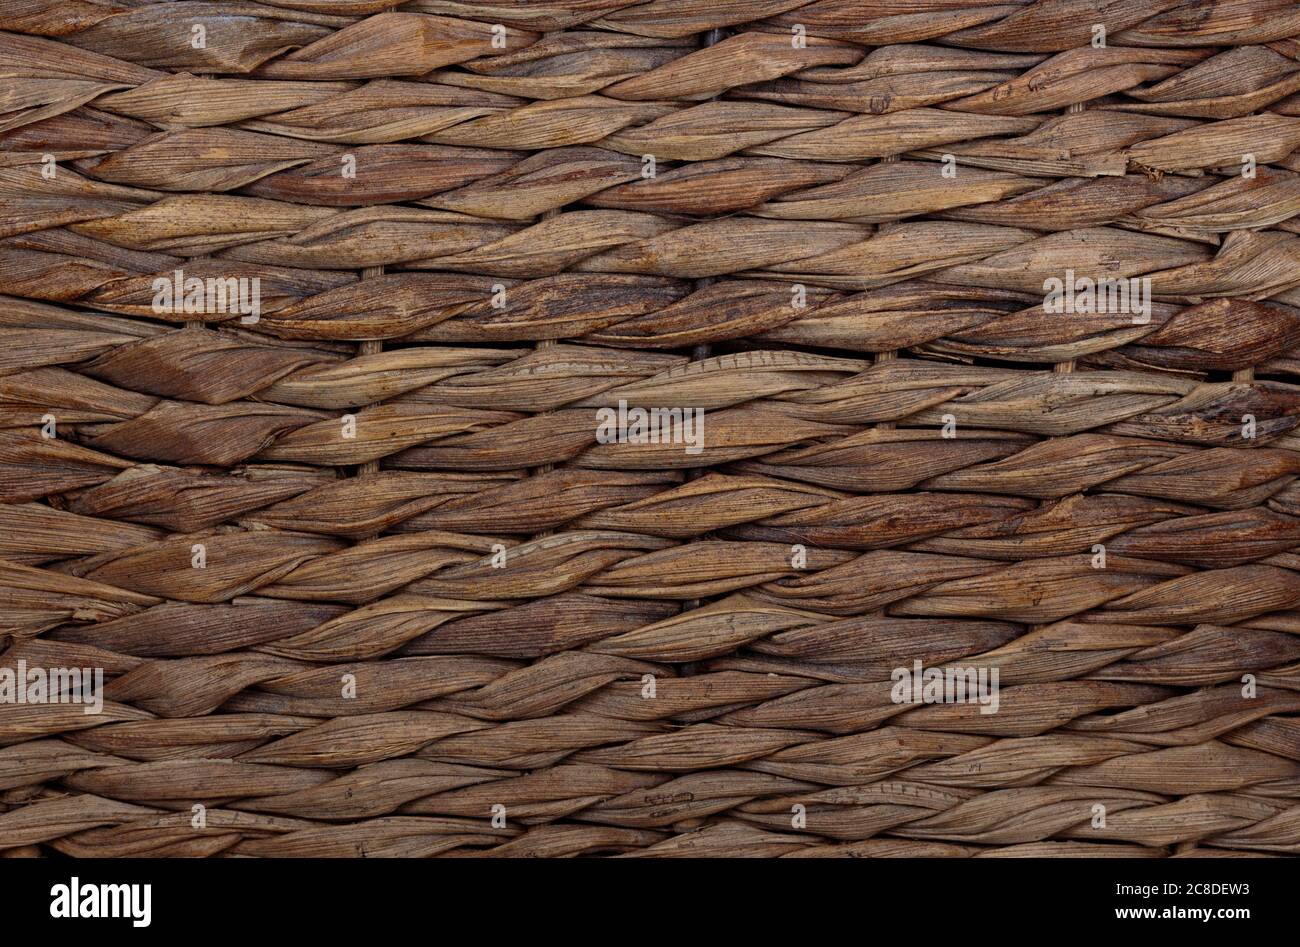 macro-photographie d'une texture plate, rustique, en osier, en panier tissé dans une direction horizontale dans des couleurs brunes, terre pour une utilisation comme arrière-plan ou pour la composition Banque D'Images